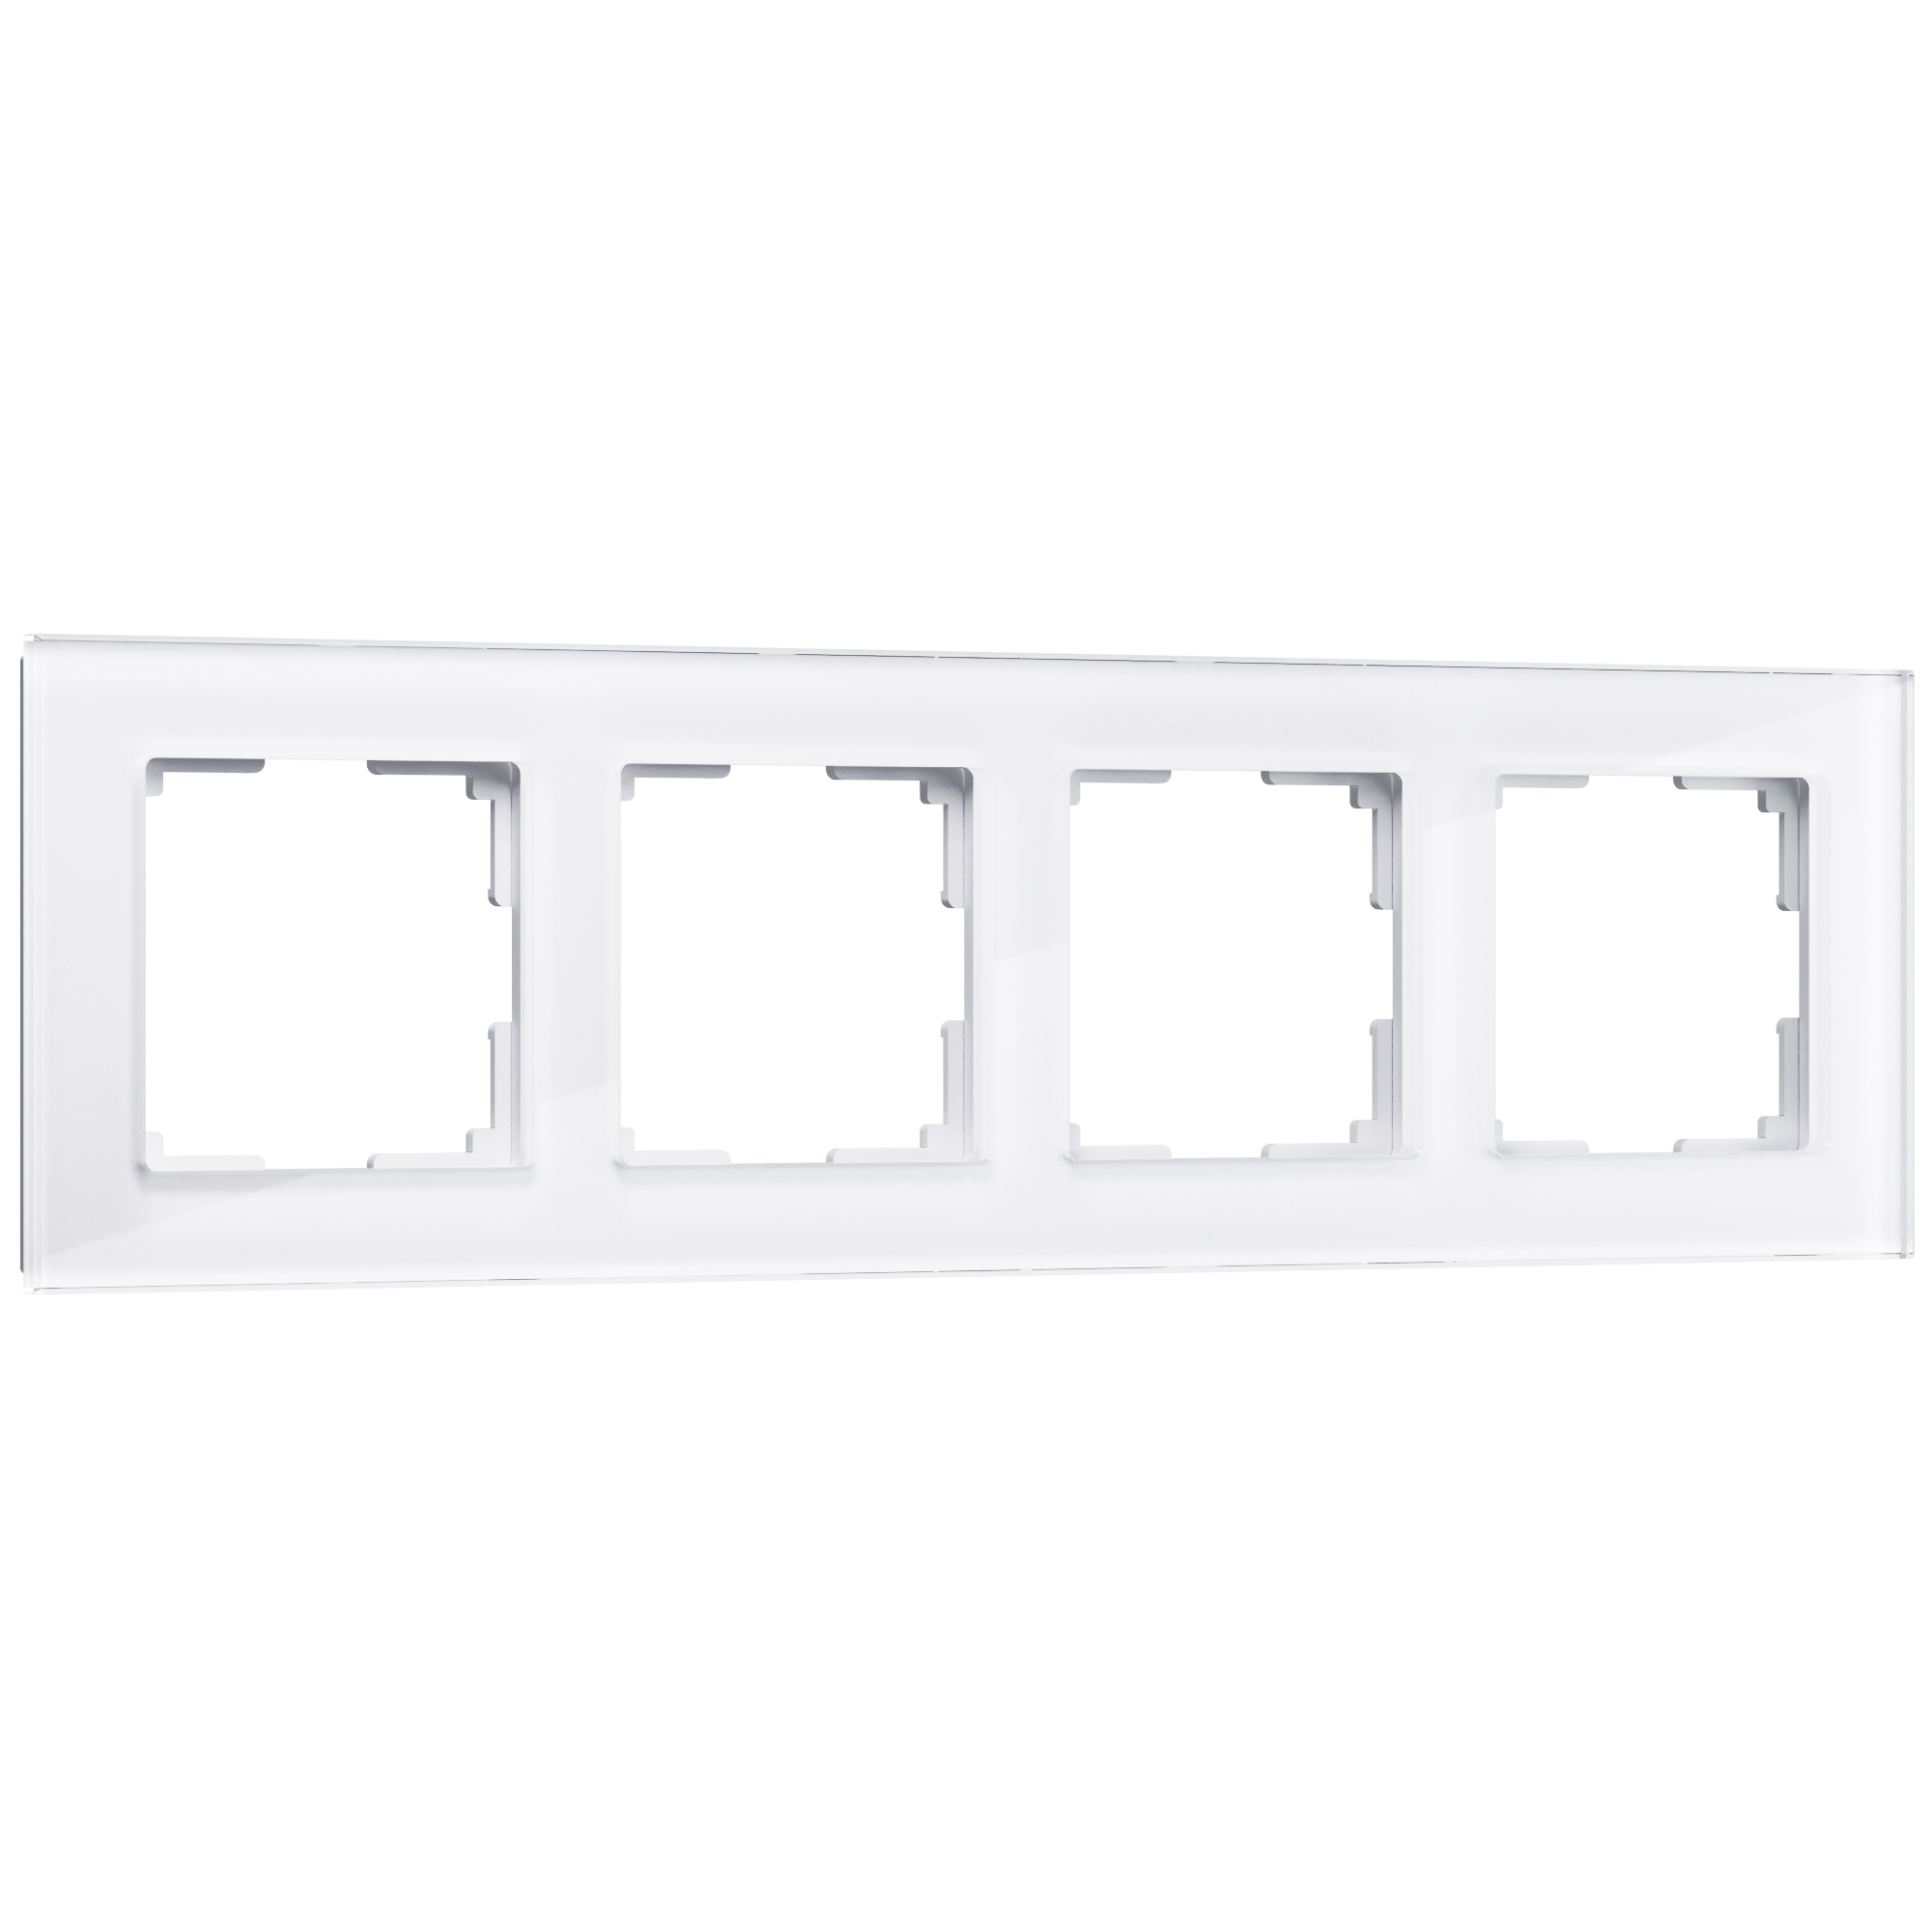 Рамка для розетки / выключателя на 4 поста Werkel W0041101  Favorit белый стекло рамка luxar art на 1 пост стекло мокко 4606400620617